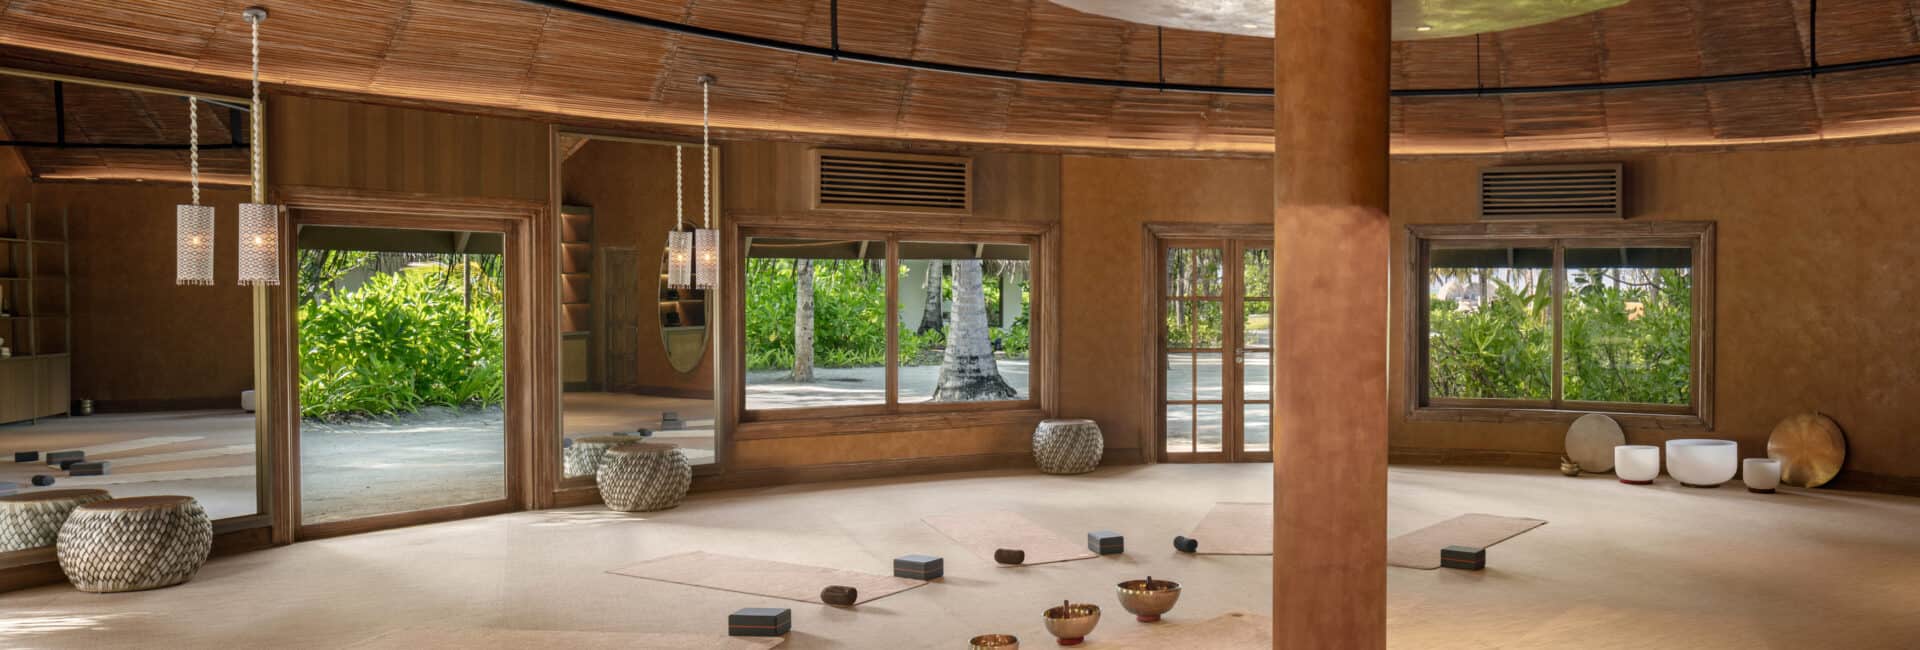 Six Senses Kanuhura - Yoga Pavilion